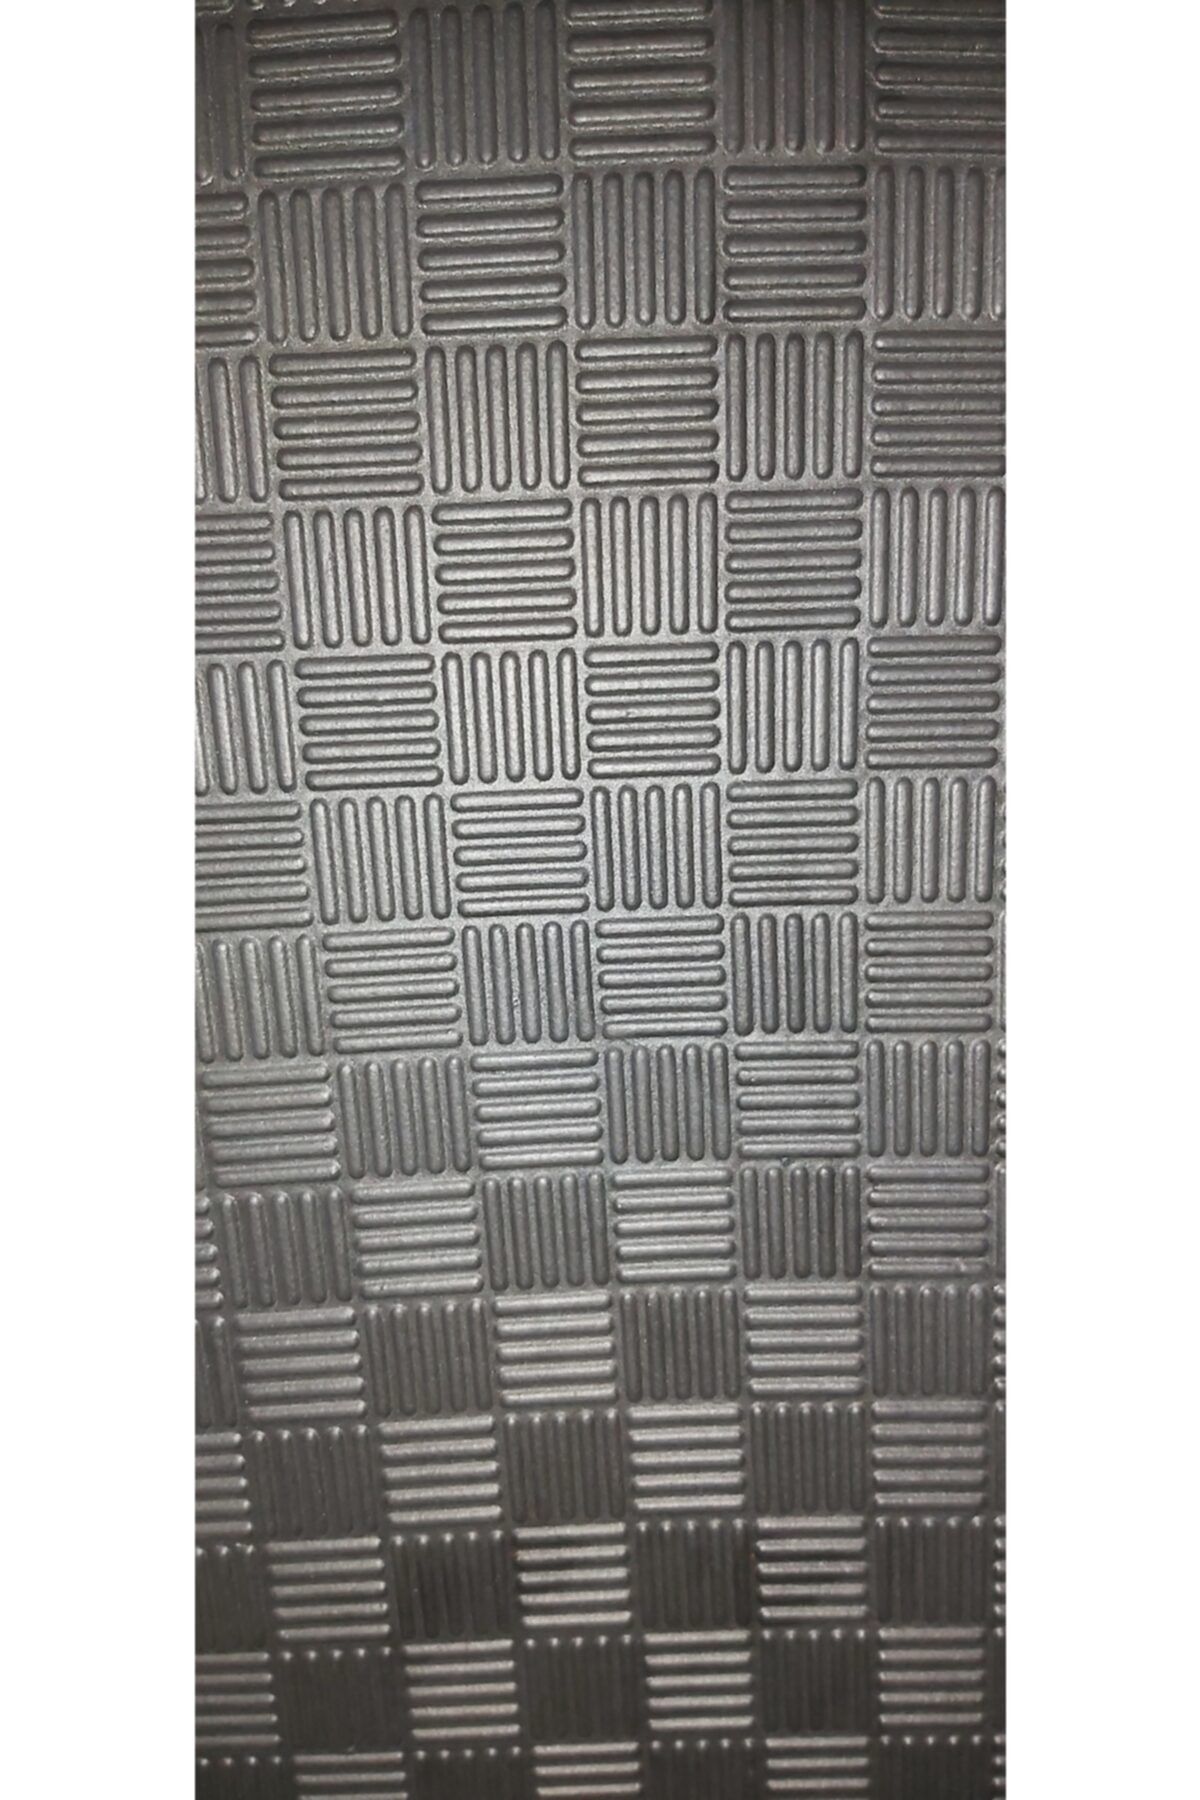 KIVRAK 100x100 cm 13 mm Thickness Good Quality Tatami Floor Mat - Trendyol